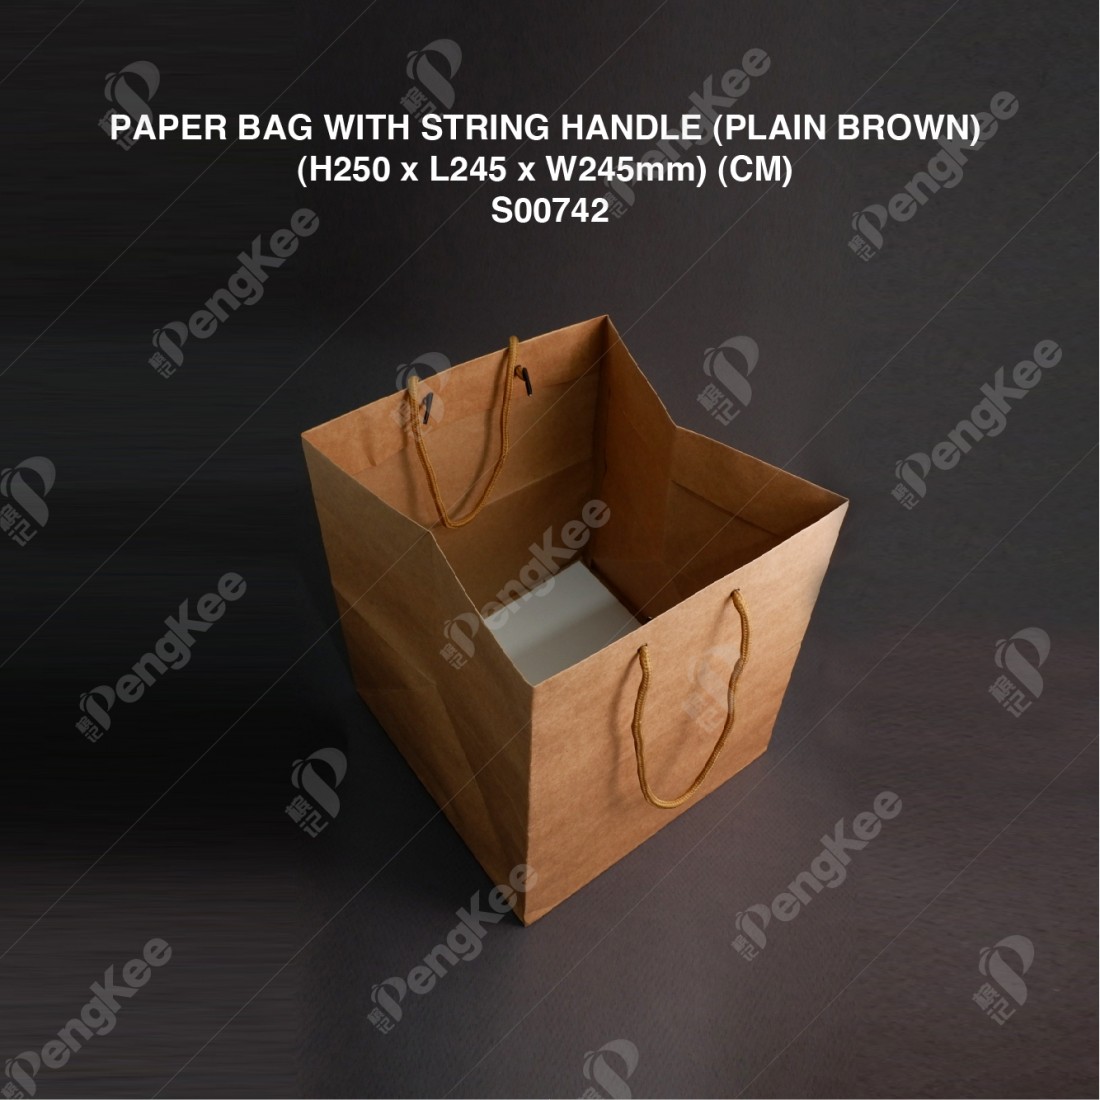 PAPER BAG WITH STRING HANDLE (PLAIN BROWN) (H250 x L245 x W245mm) (CM) (25'S) (8PKTCTN) 